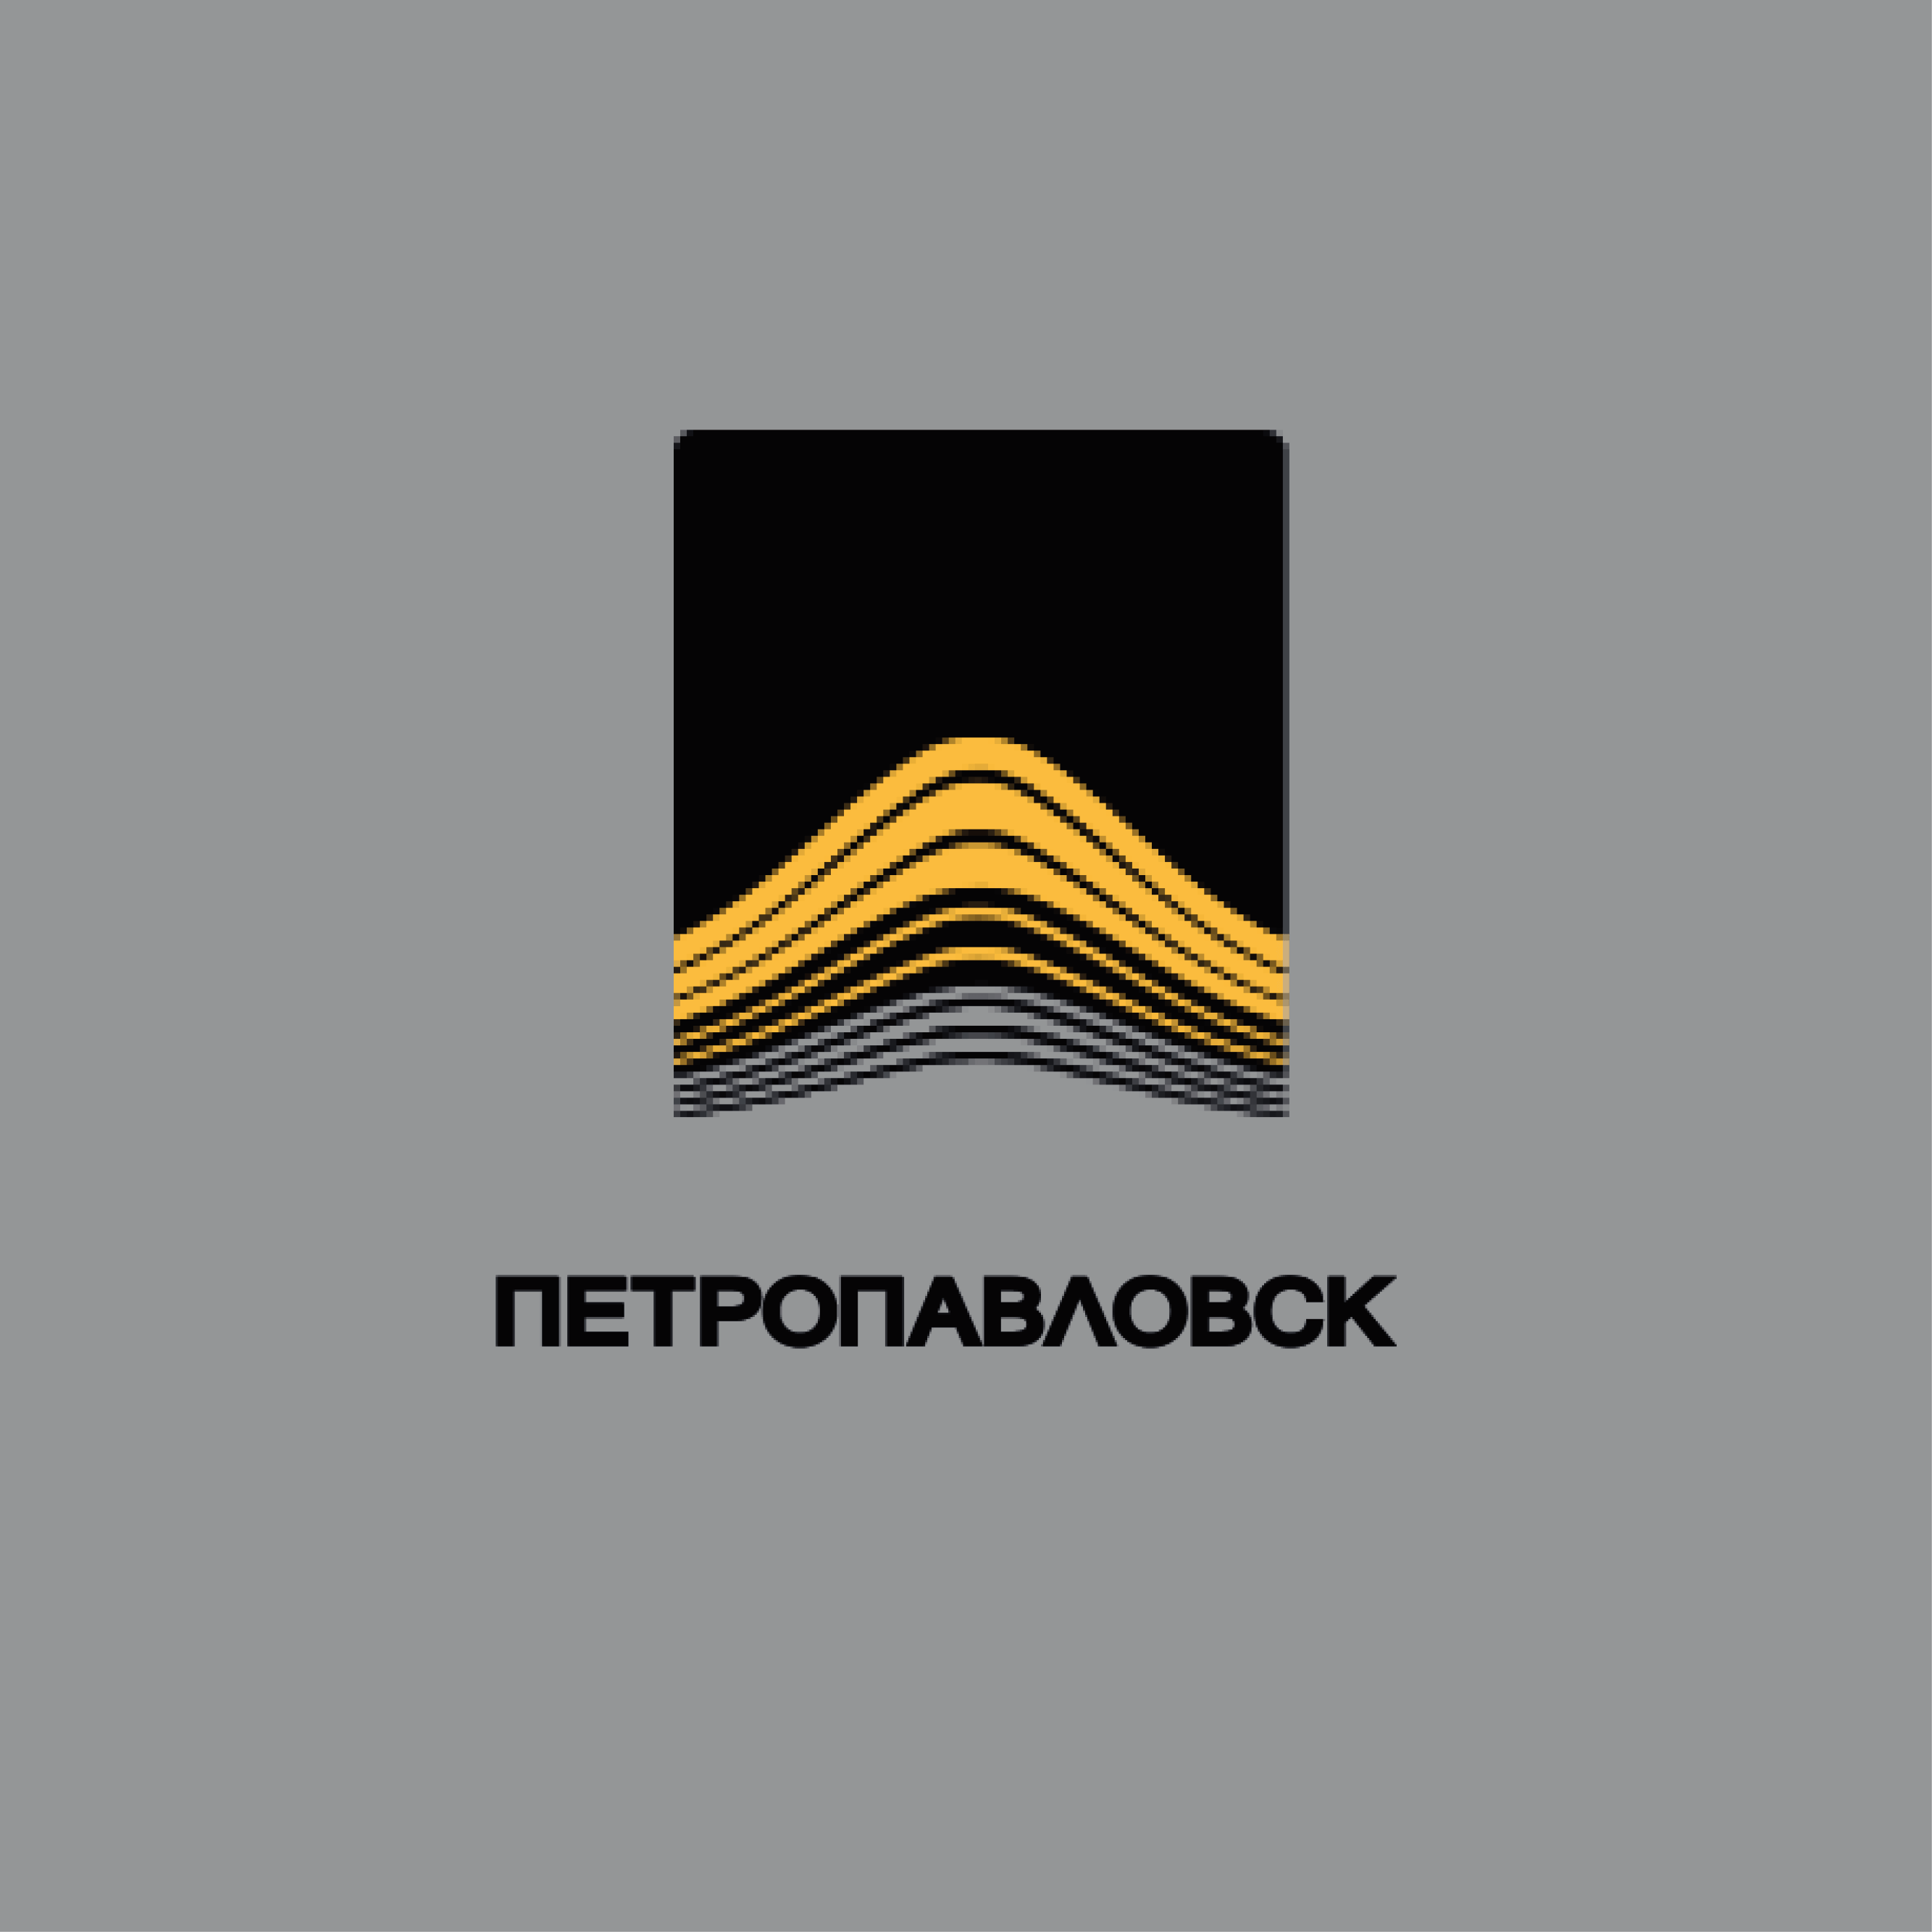 Петропавловск logo